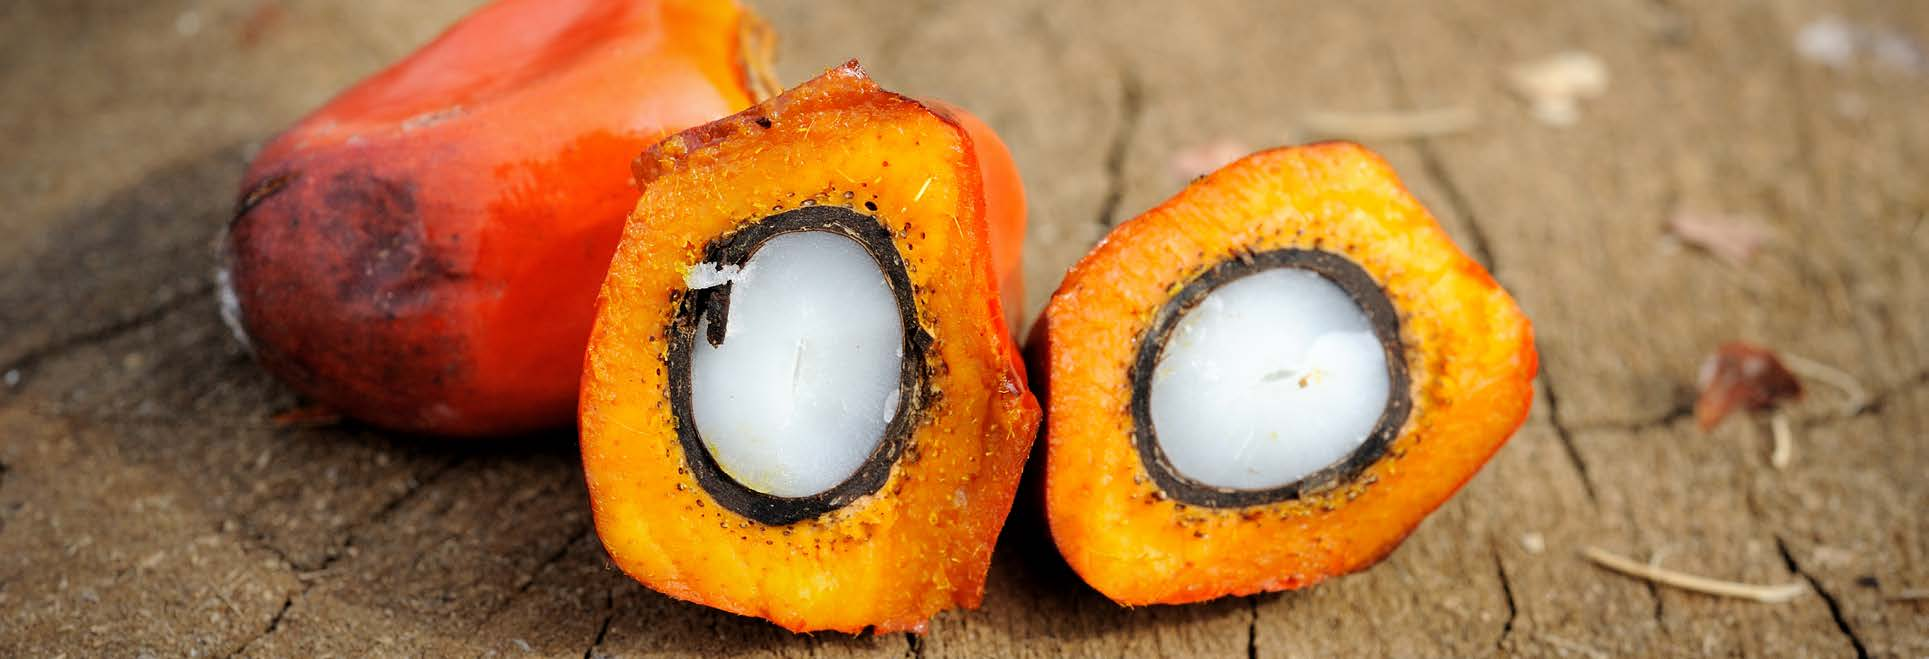 VAD ÄR PALMOLJA? Palmolja är den mest använda vegetabiliska oljan i världen. Palmfruktsolja, allmänt känd som palmolja, produceras från oljepalmens (Elaeis Guineensis) fruktkött.